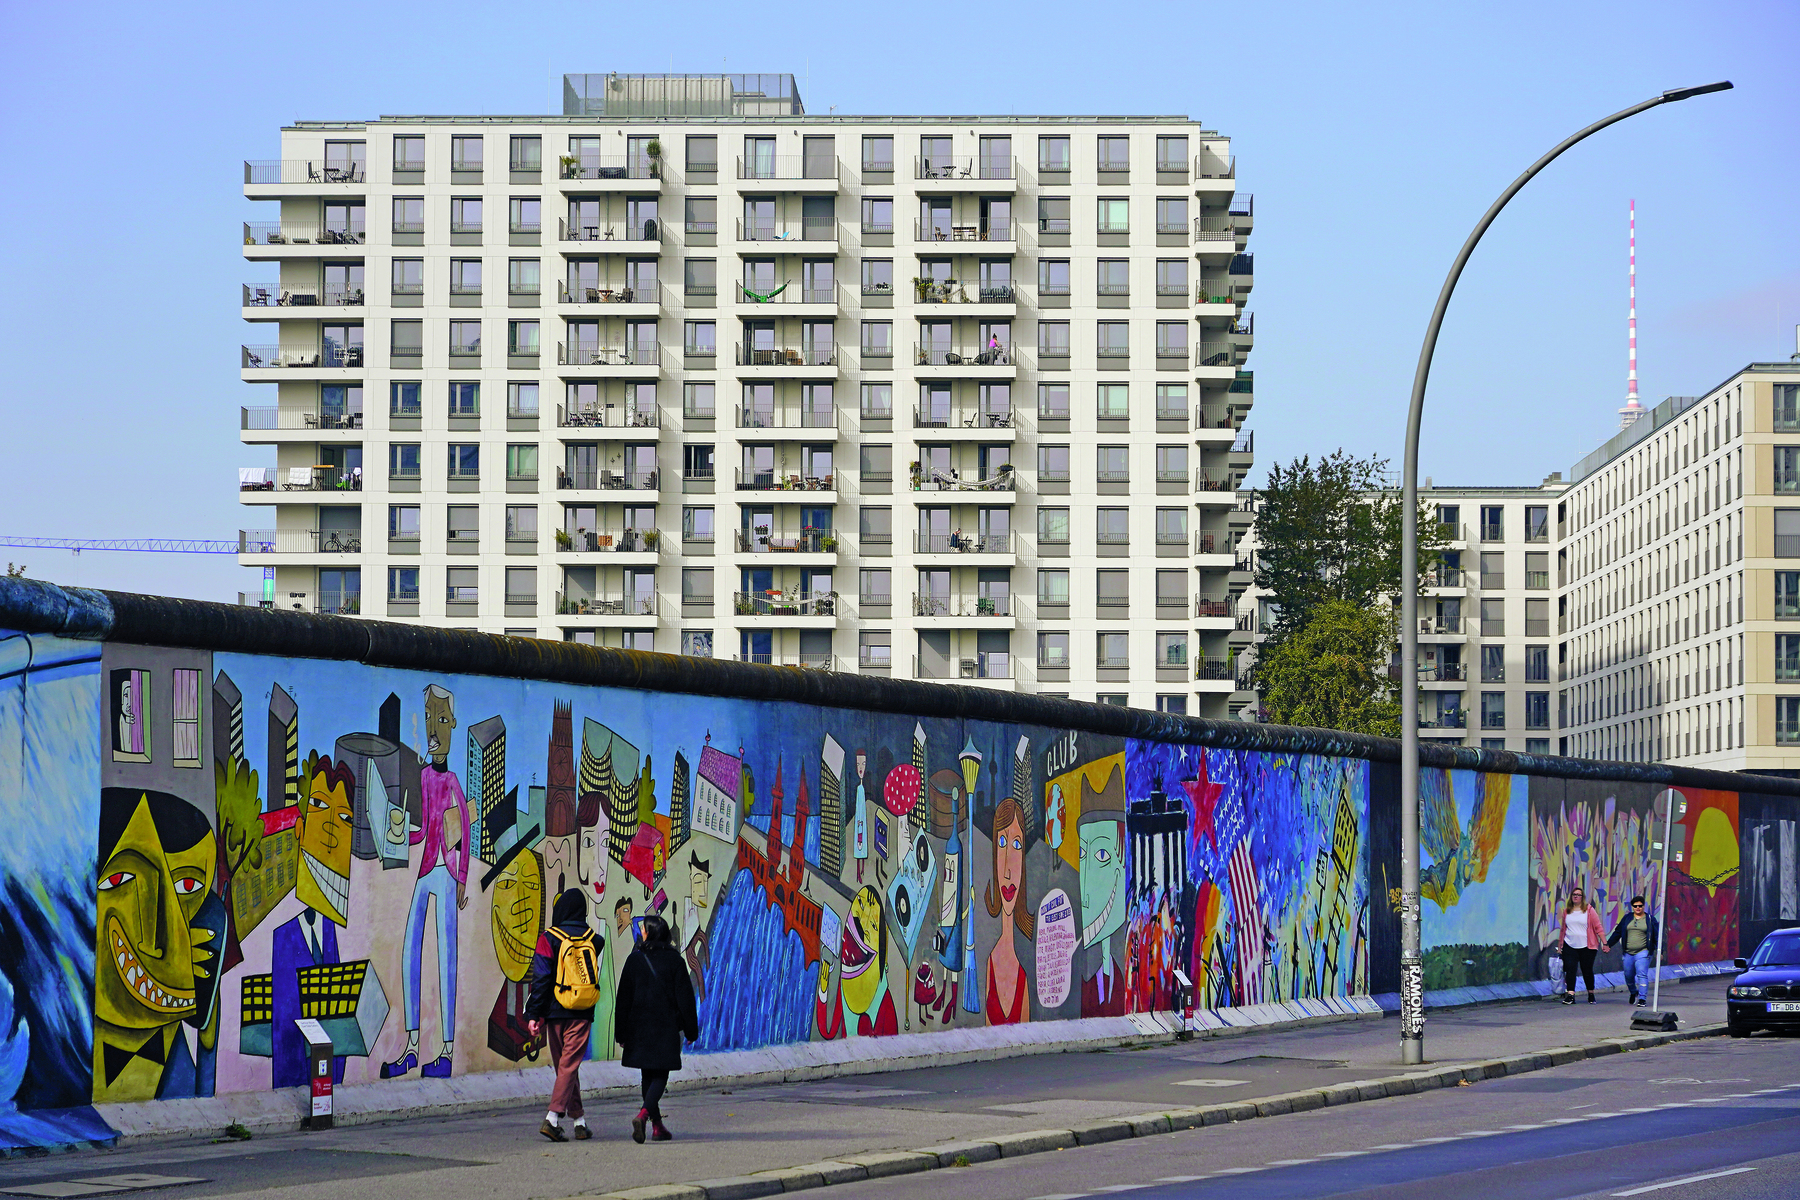 Fotografia. Em uma via, um muro extenso, repleto de grafites coloridos. Em segundo plano, prédios com vários andares, com sacadas e janelas distribuídas de forma homogênea pela fachada de paredes brancas.